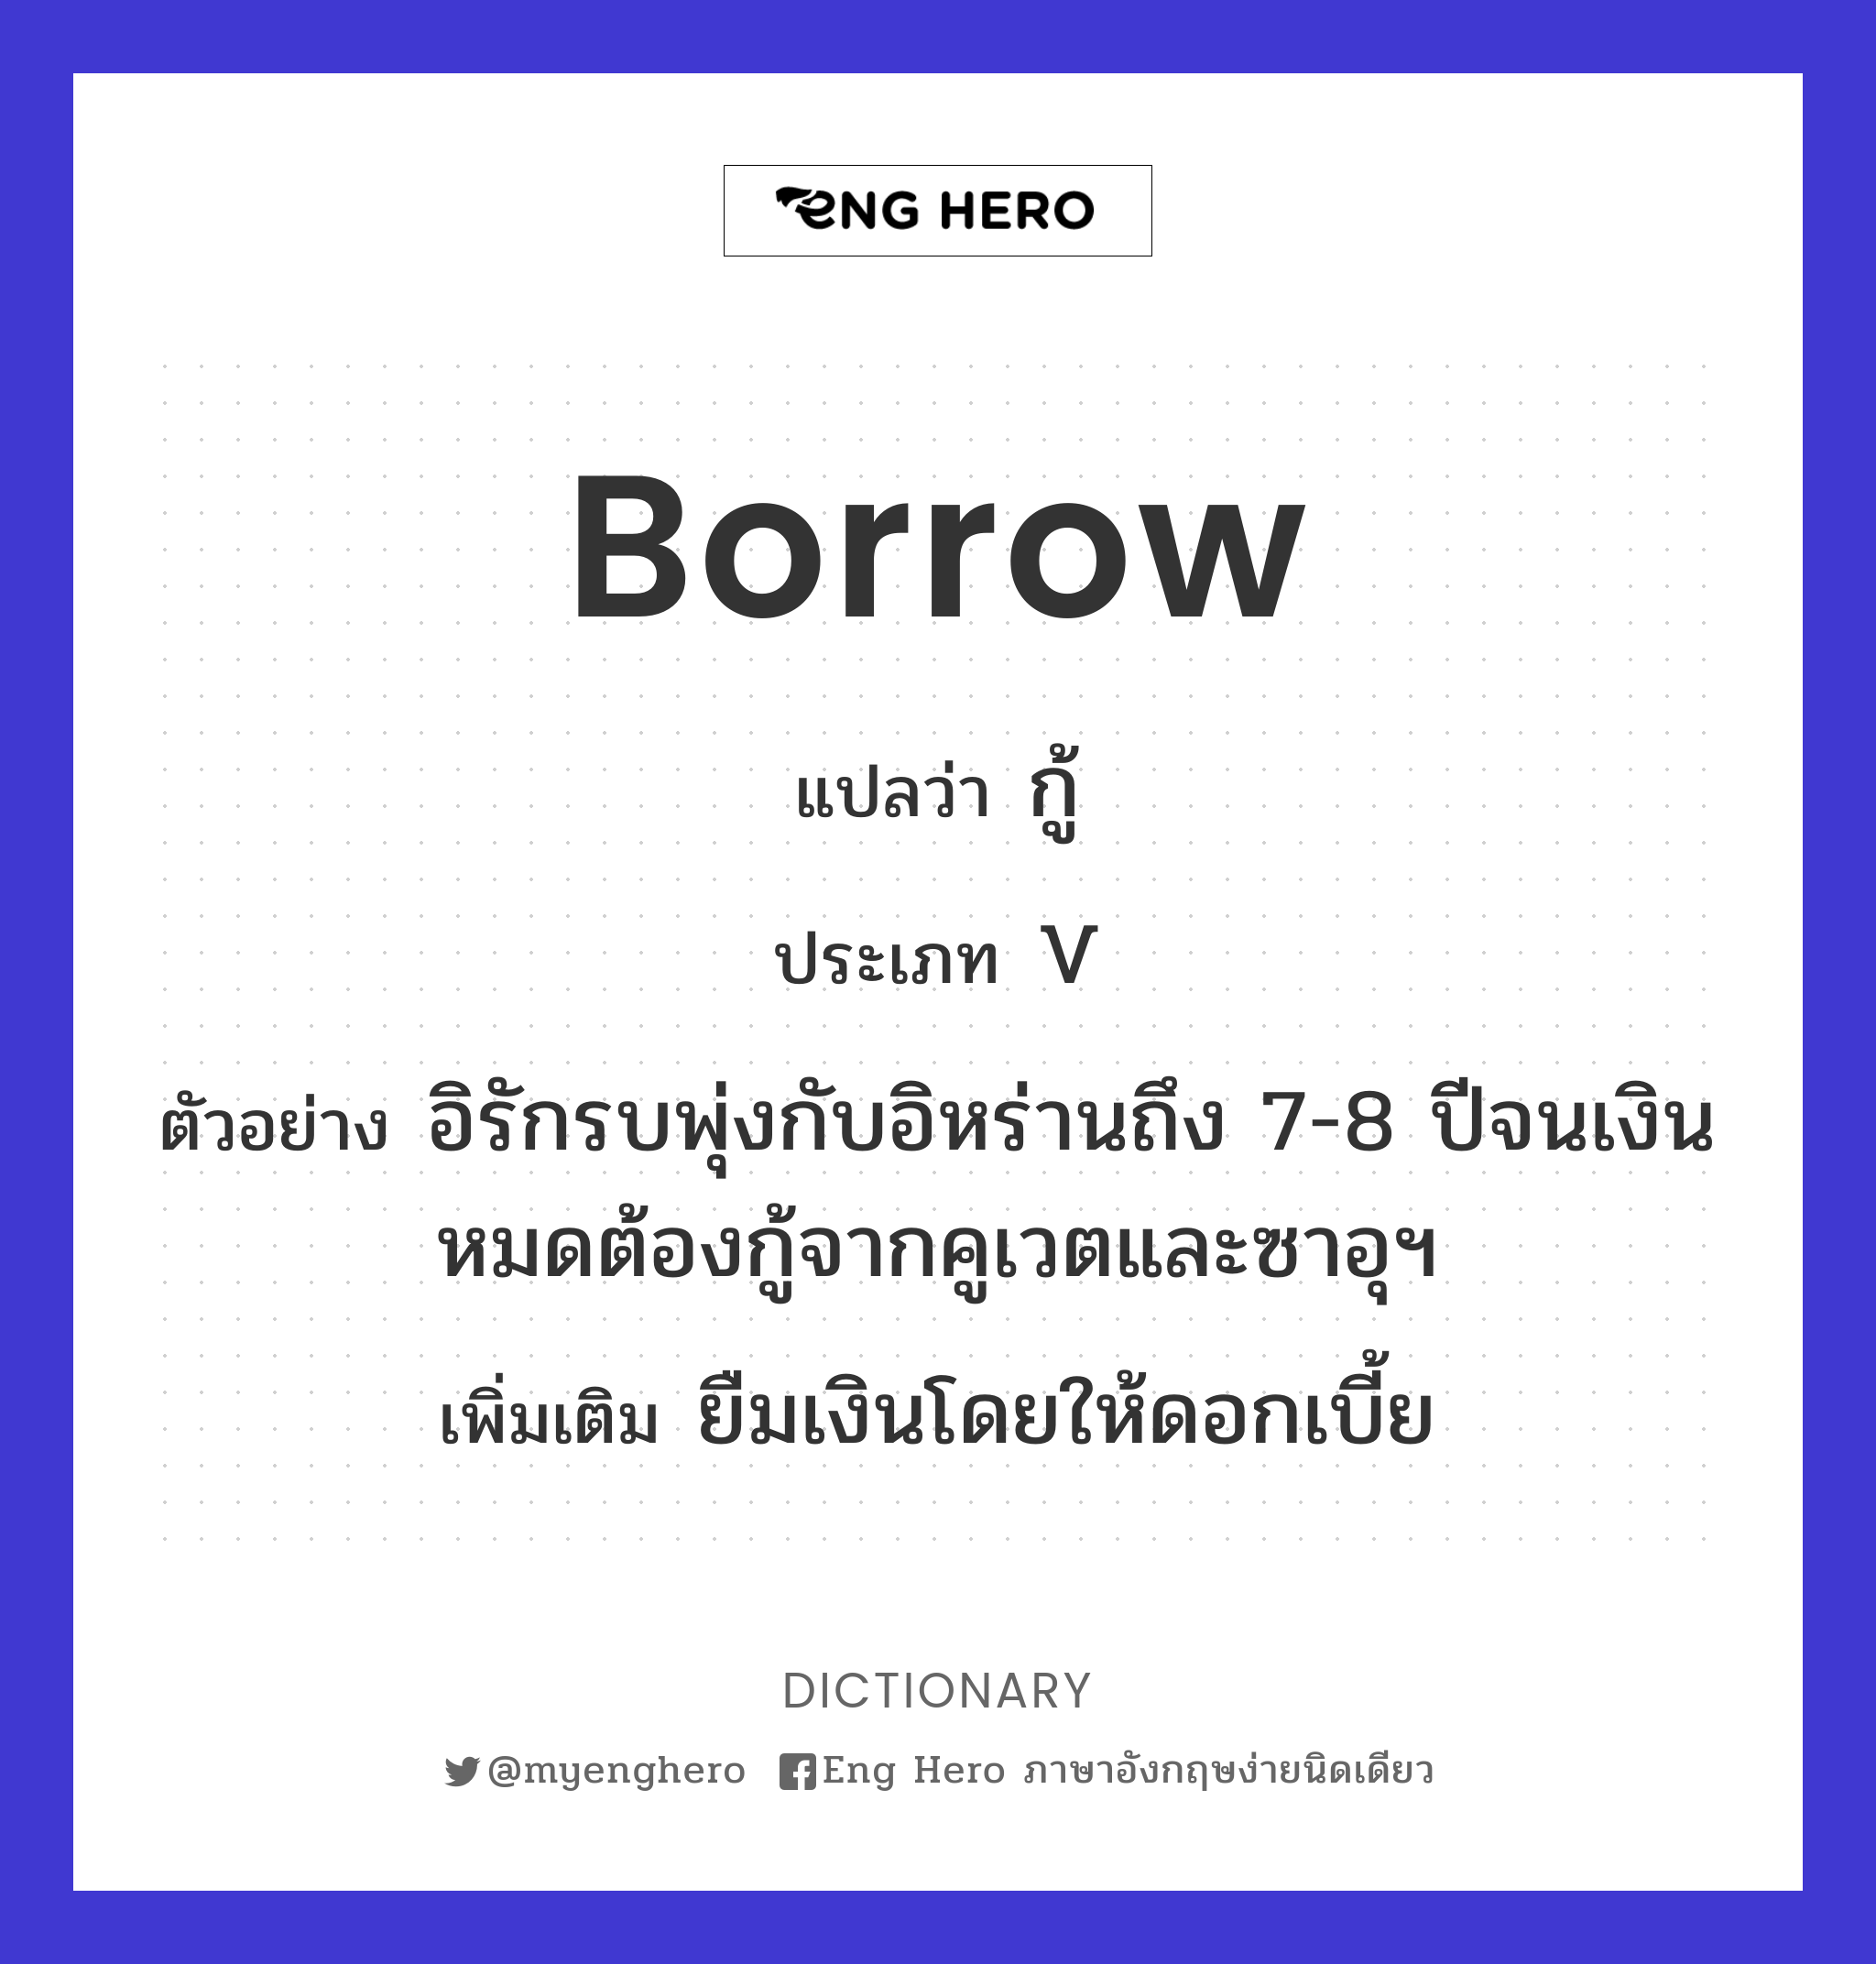 borrow